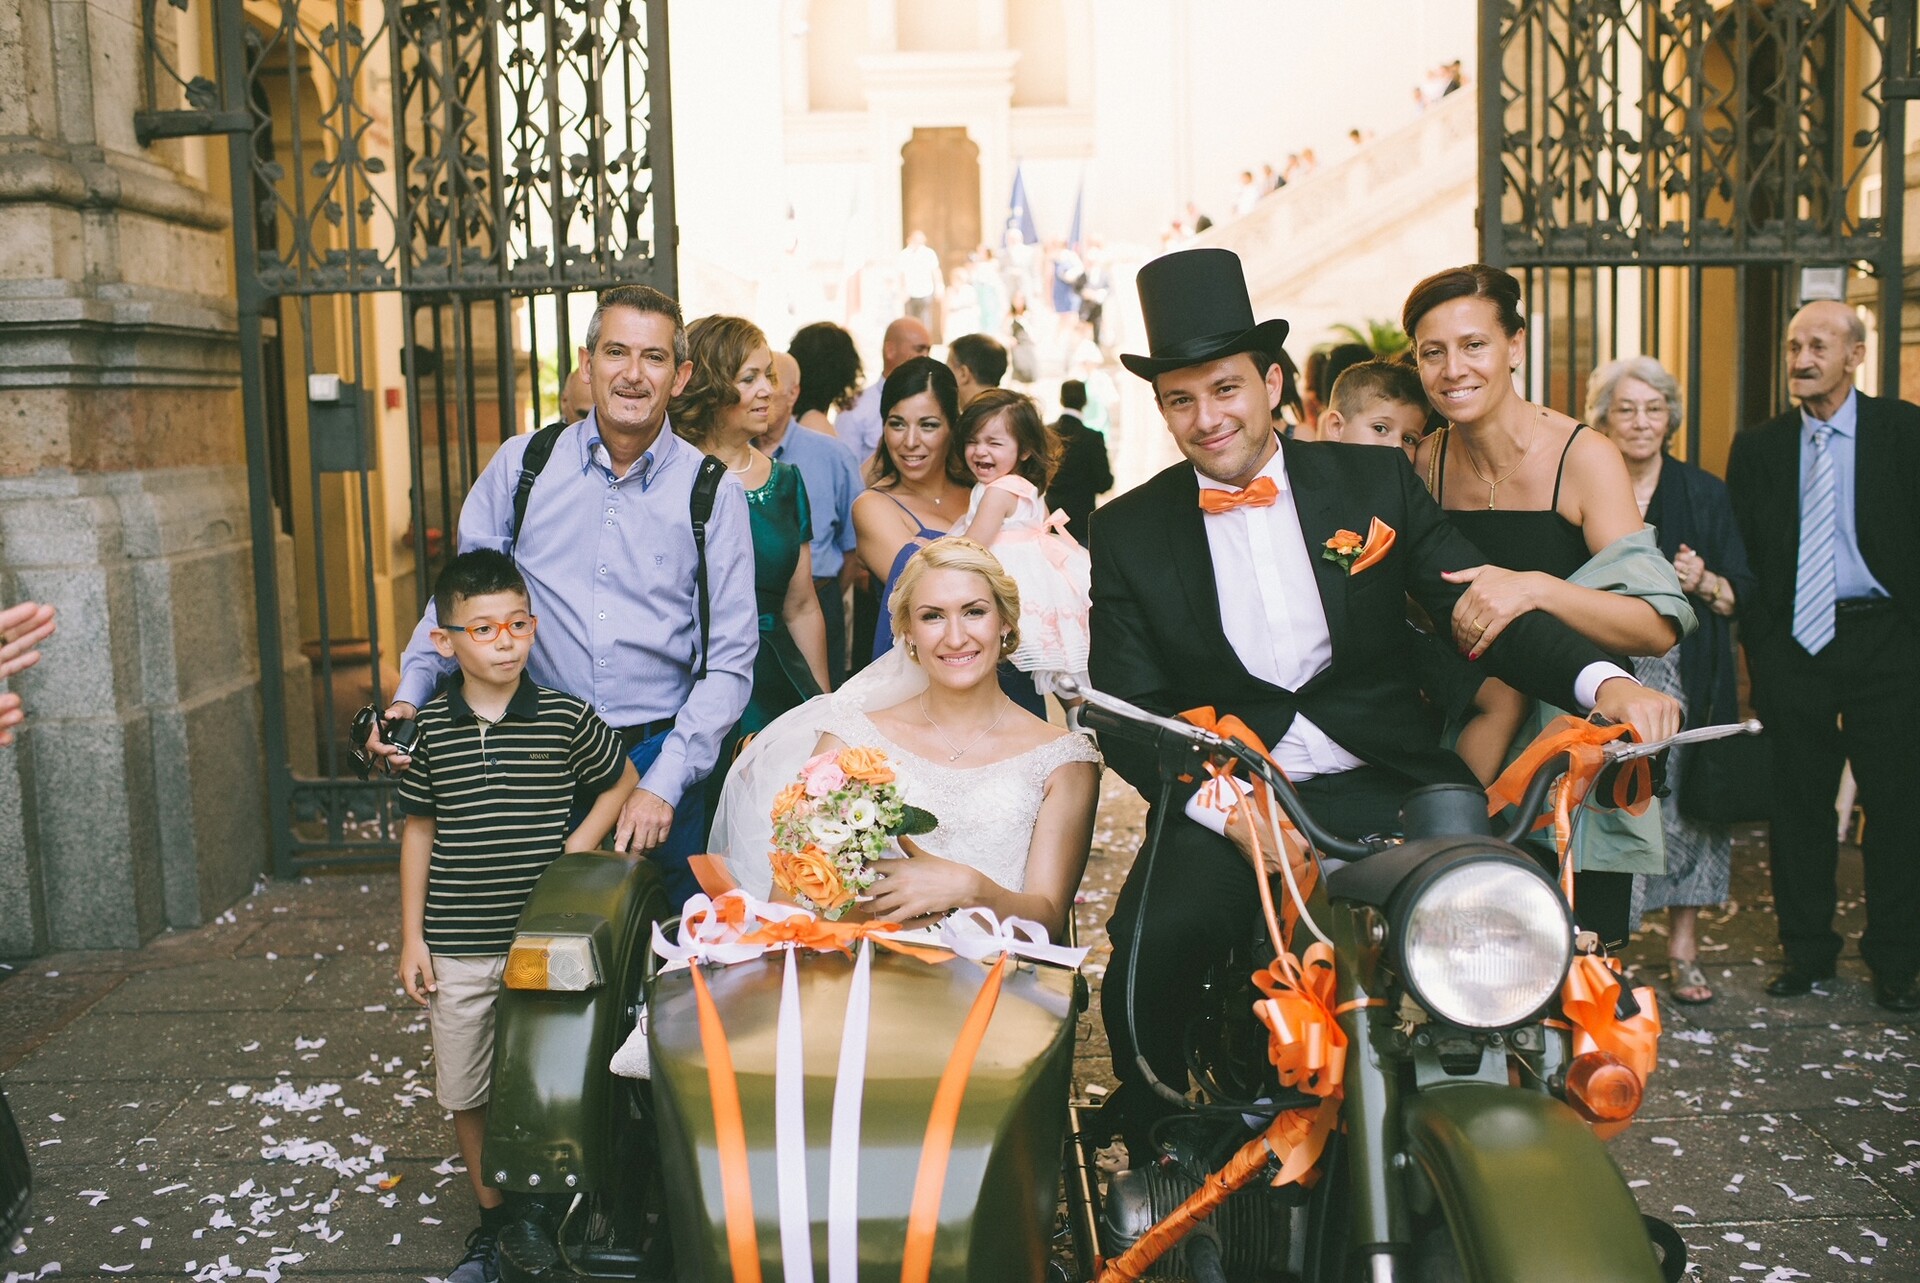 Vlada e Federico si sono sposati in Sardegna. Per il giorno del loro matrimonio hanno fatto arrivare da Rostov sul Don la moto 